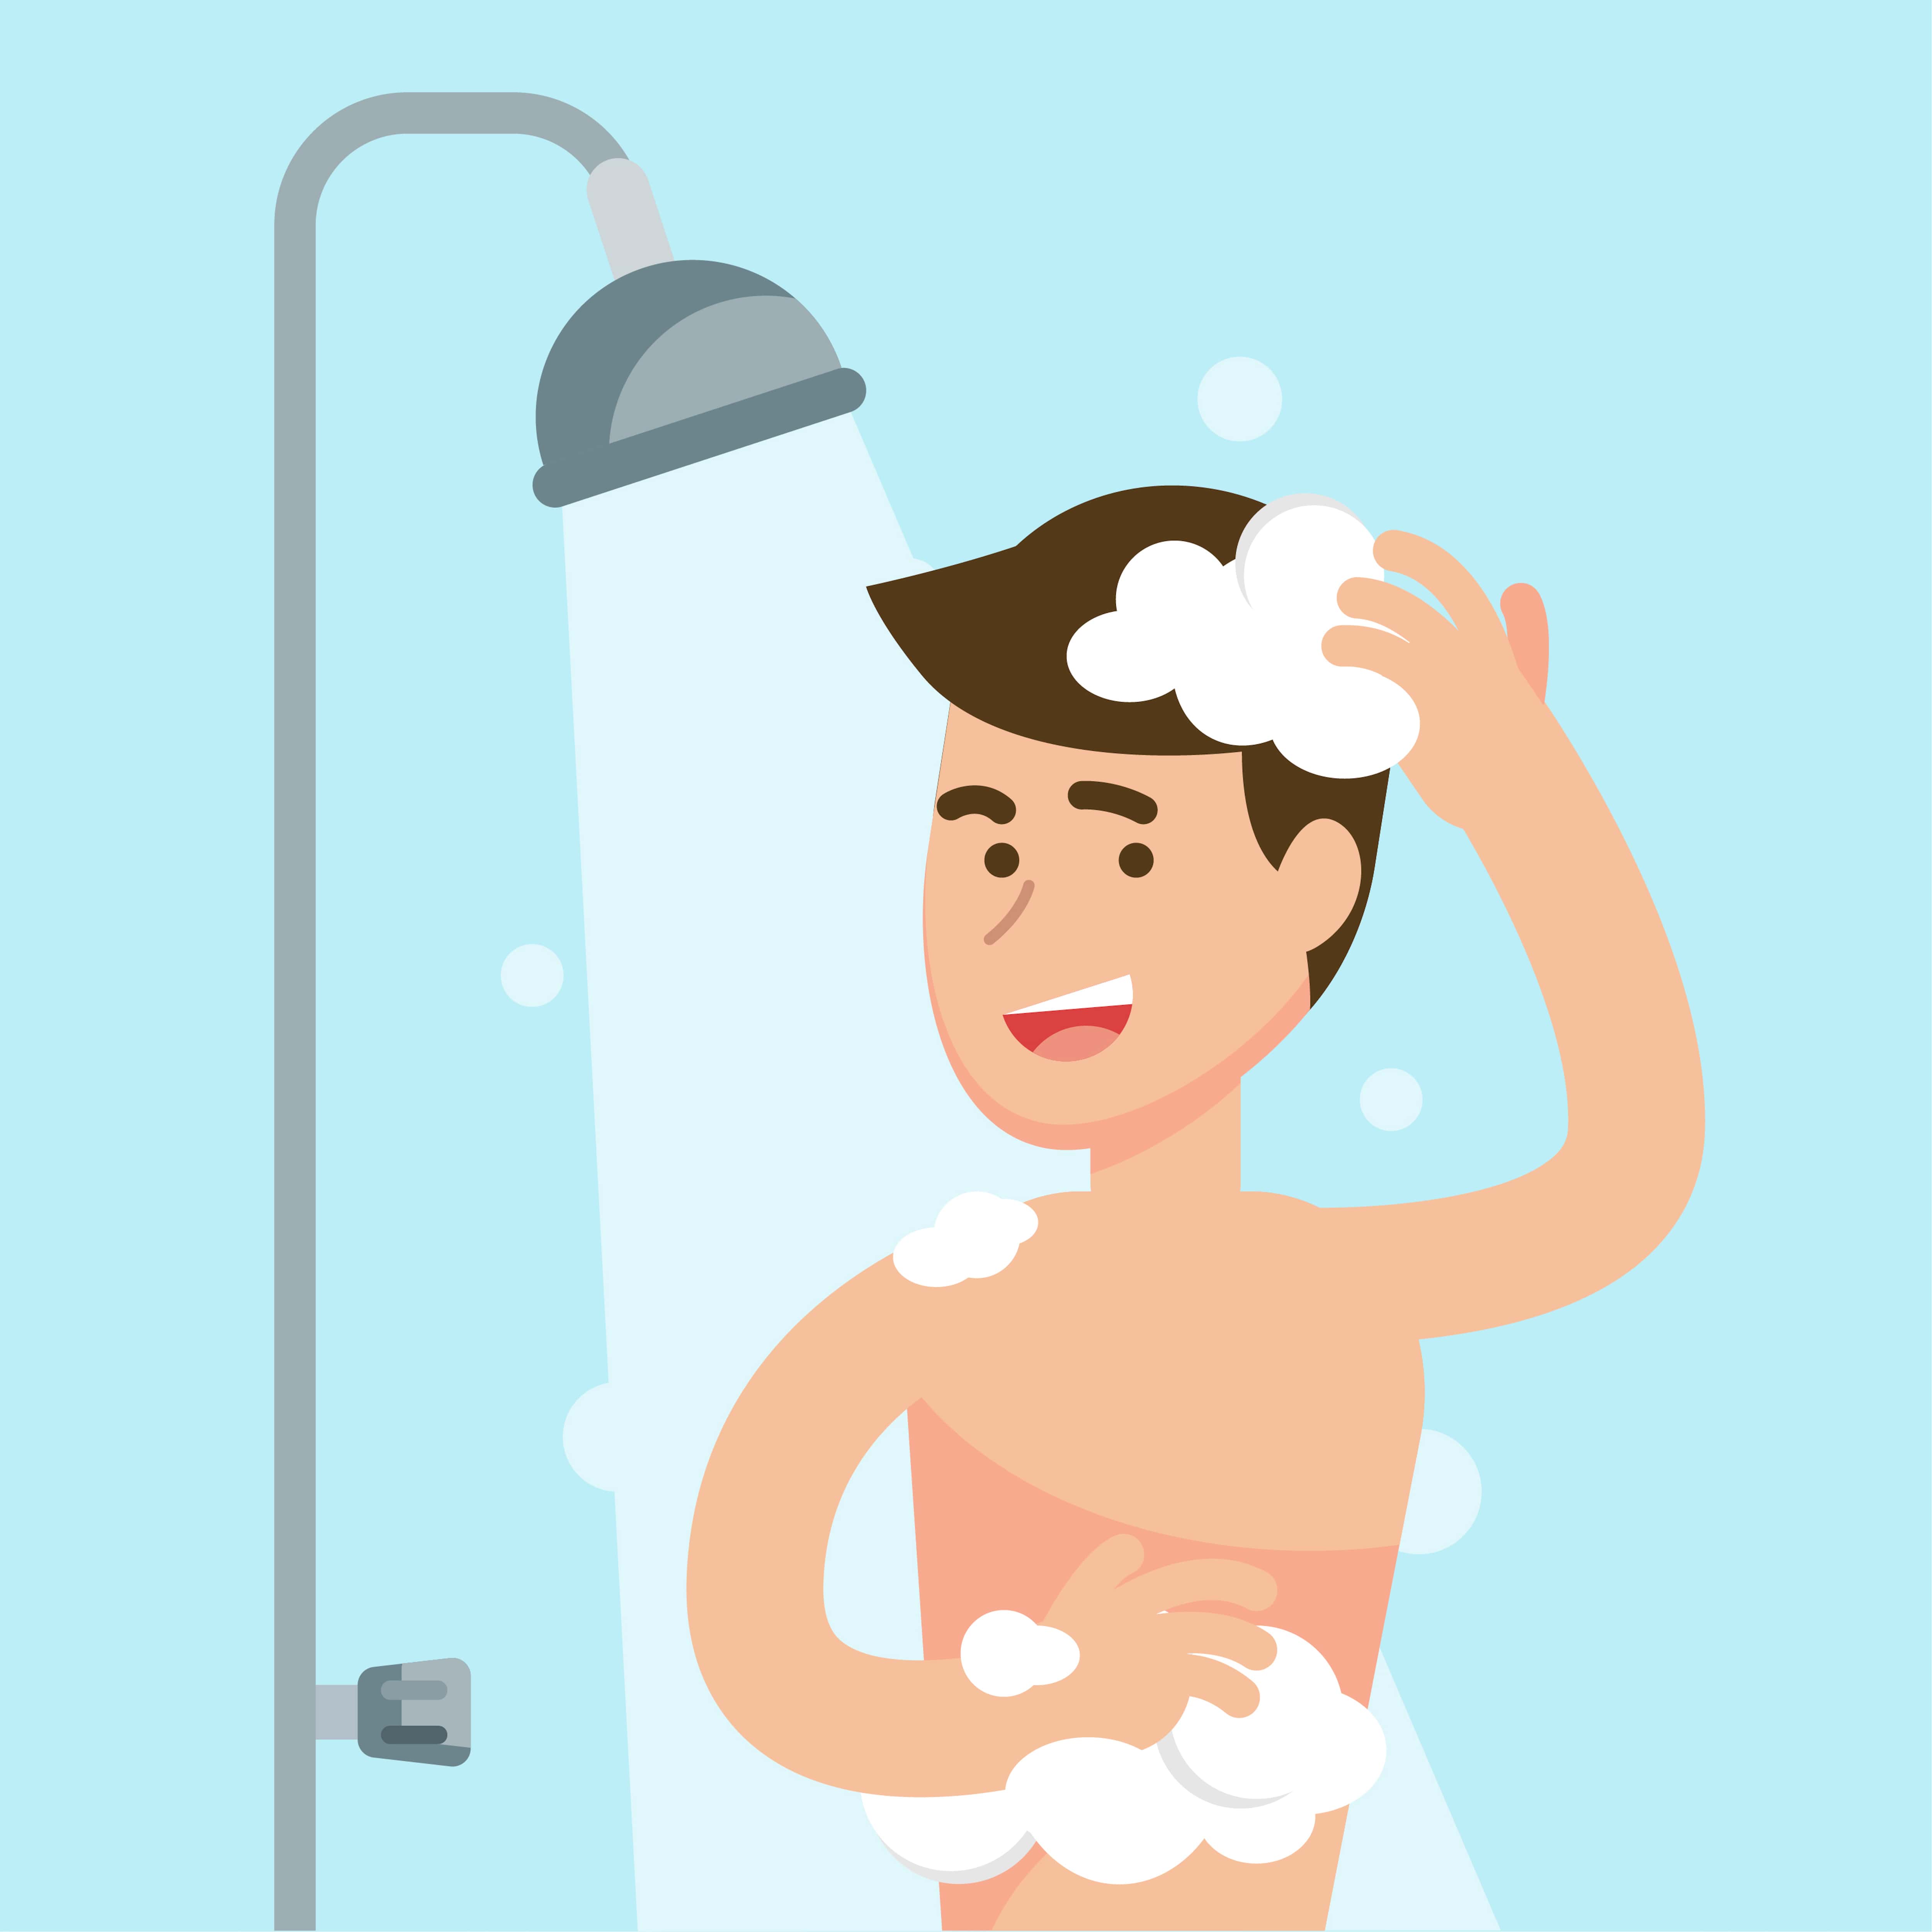 Have s shower. Человек под душем. Мужчина моется. Человек в душе вектор.